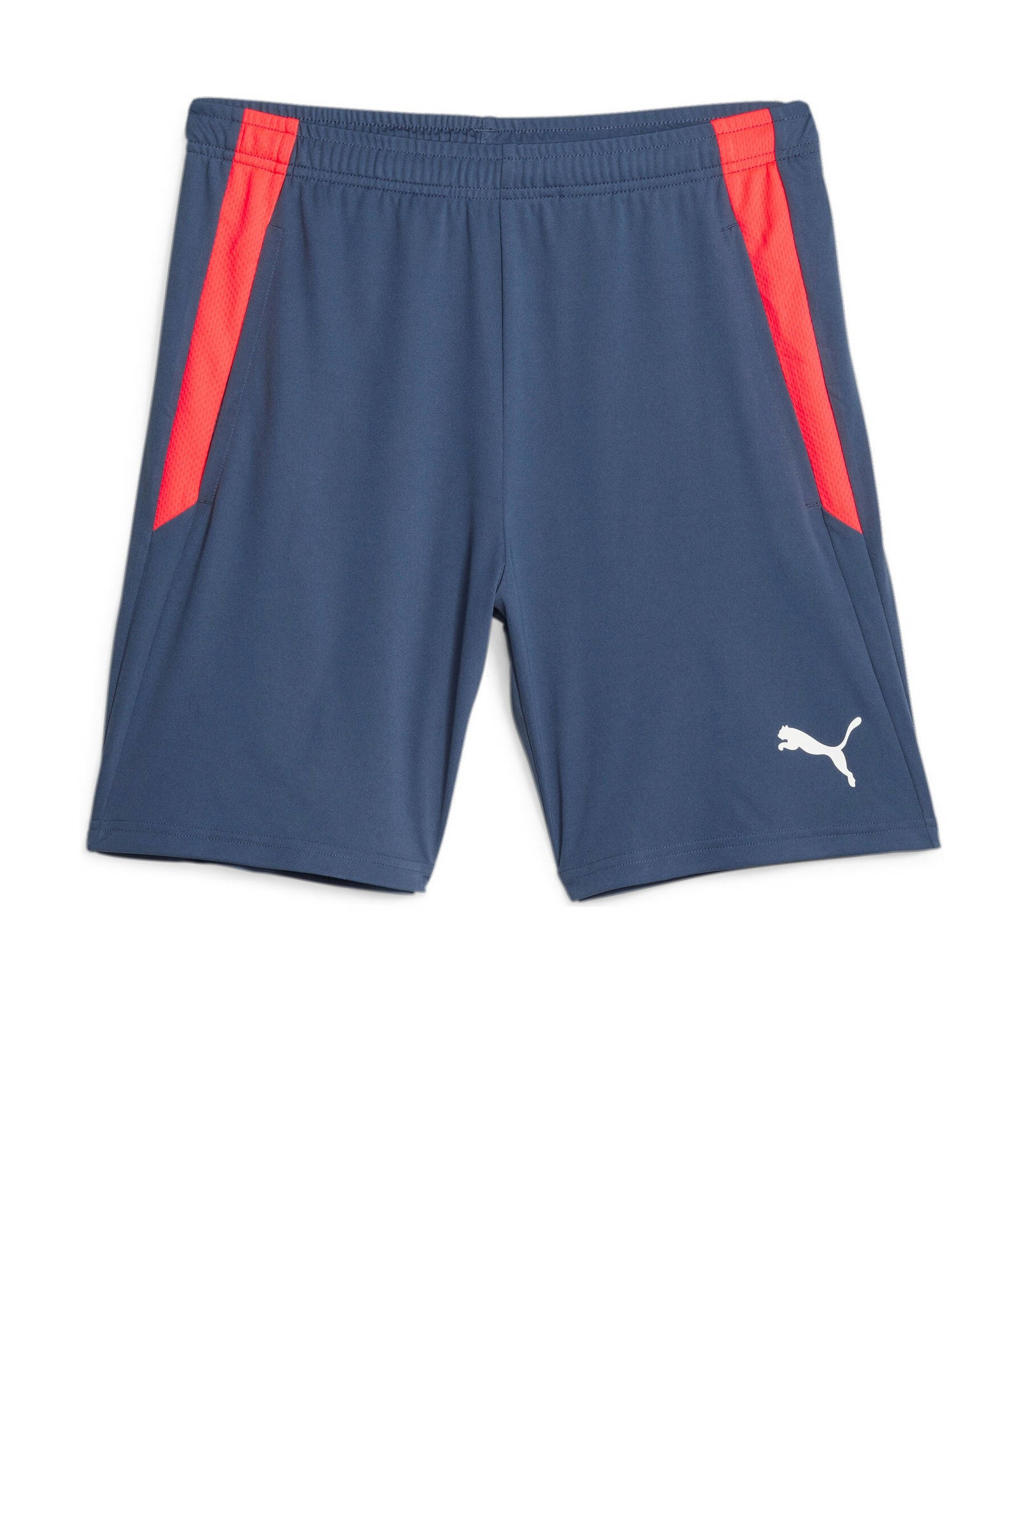 Donkerblauw en rode heren Puma voetbalshort van polyester met regular fit, regular waist en logo dessin